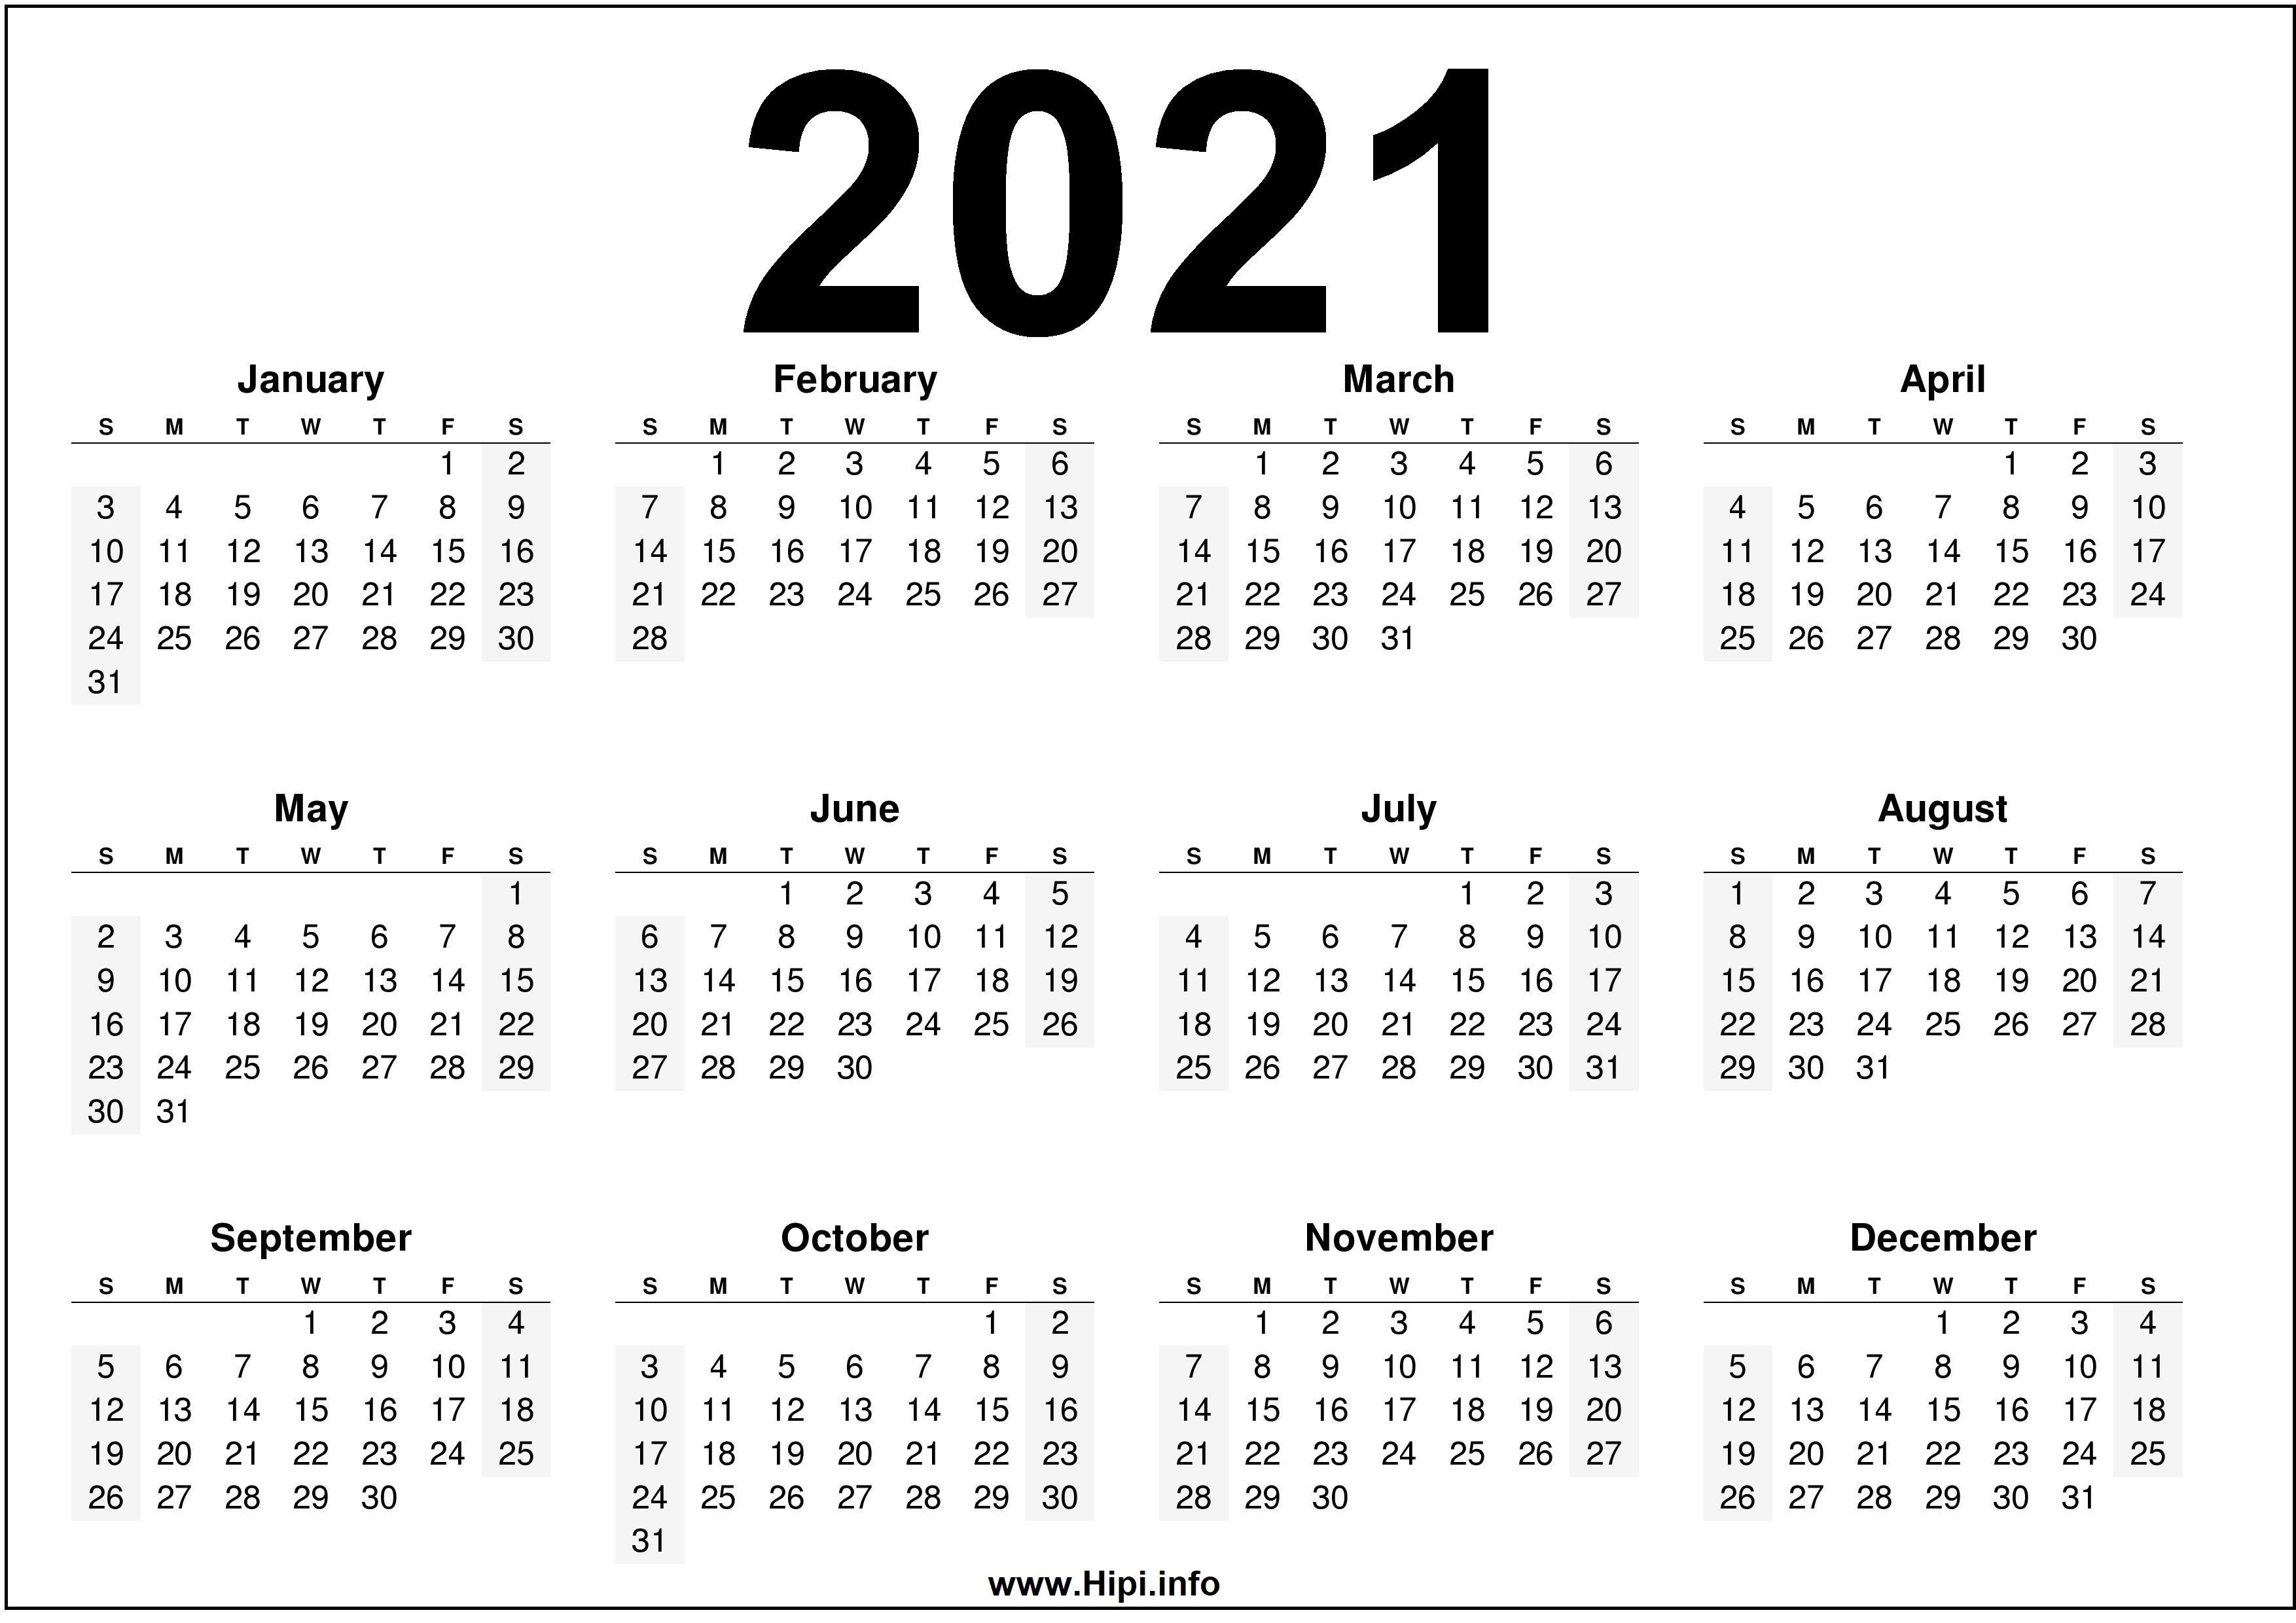 39+] Calendar 2021 Wallpapers